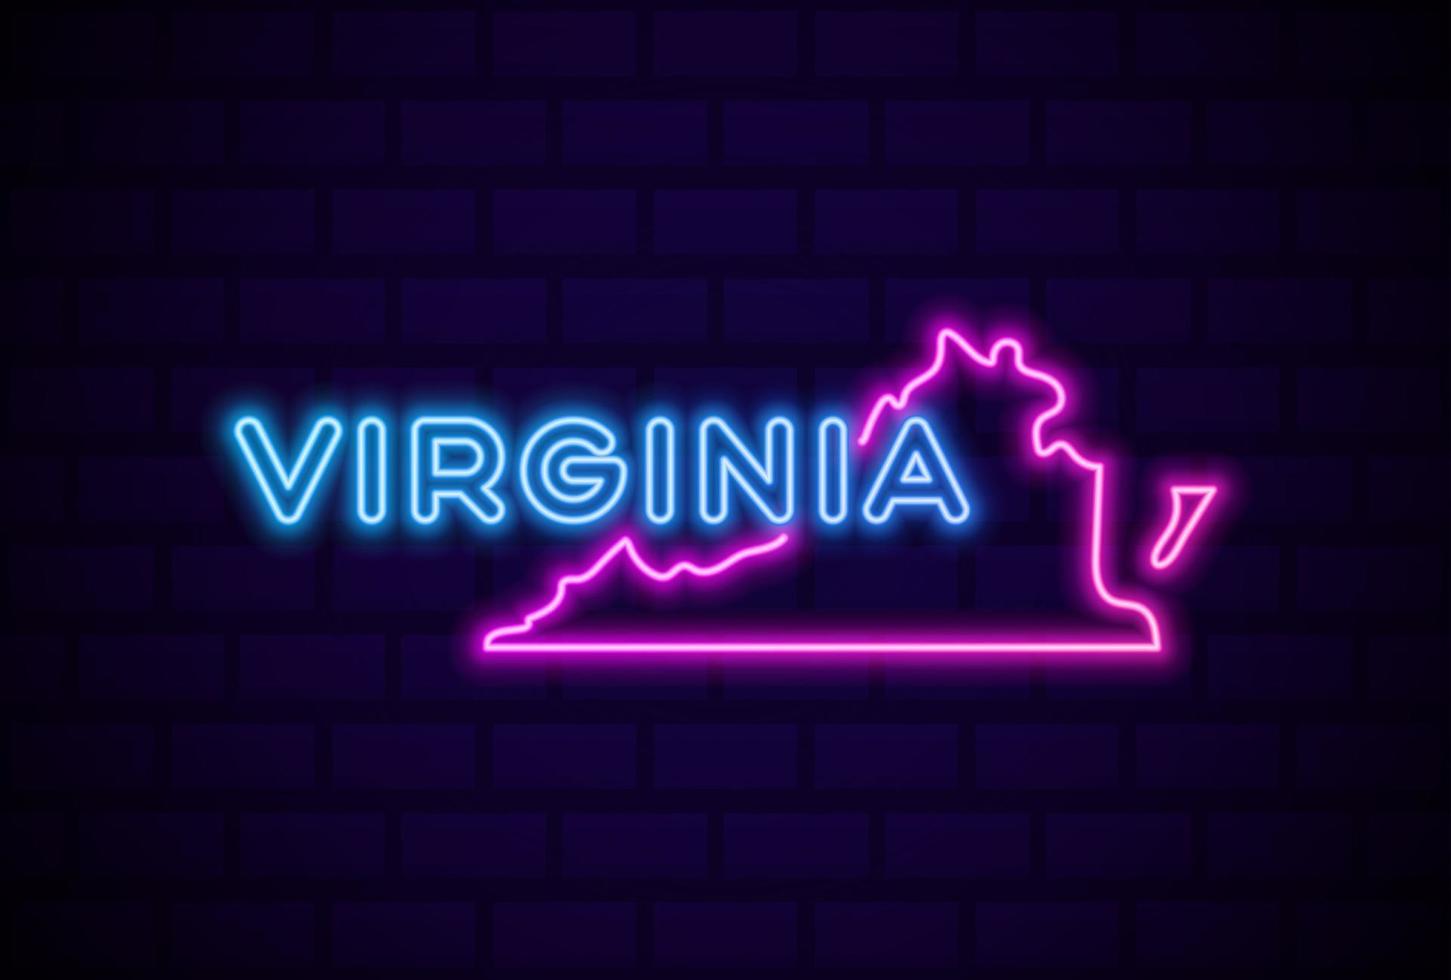 Virginia stato americano lampada al neon incandescente segno illustrazione vettoriale realistico bagliore blu muro di mattoni